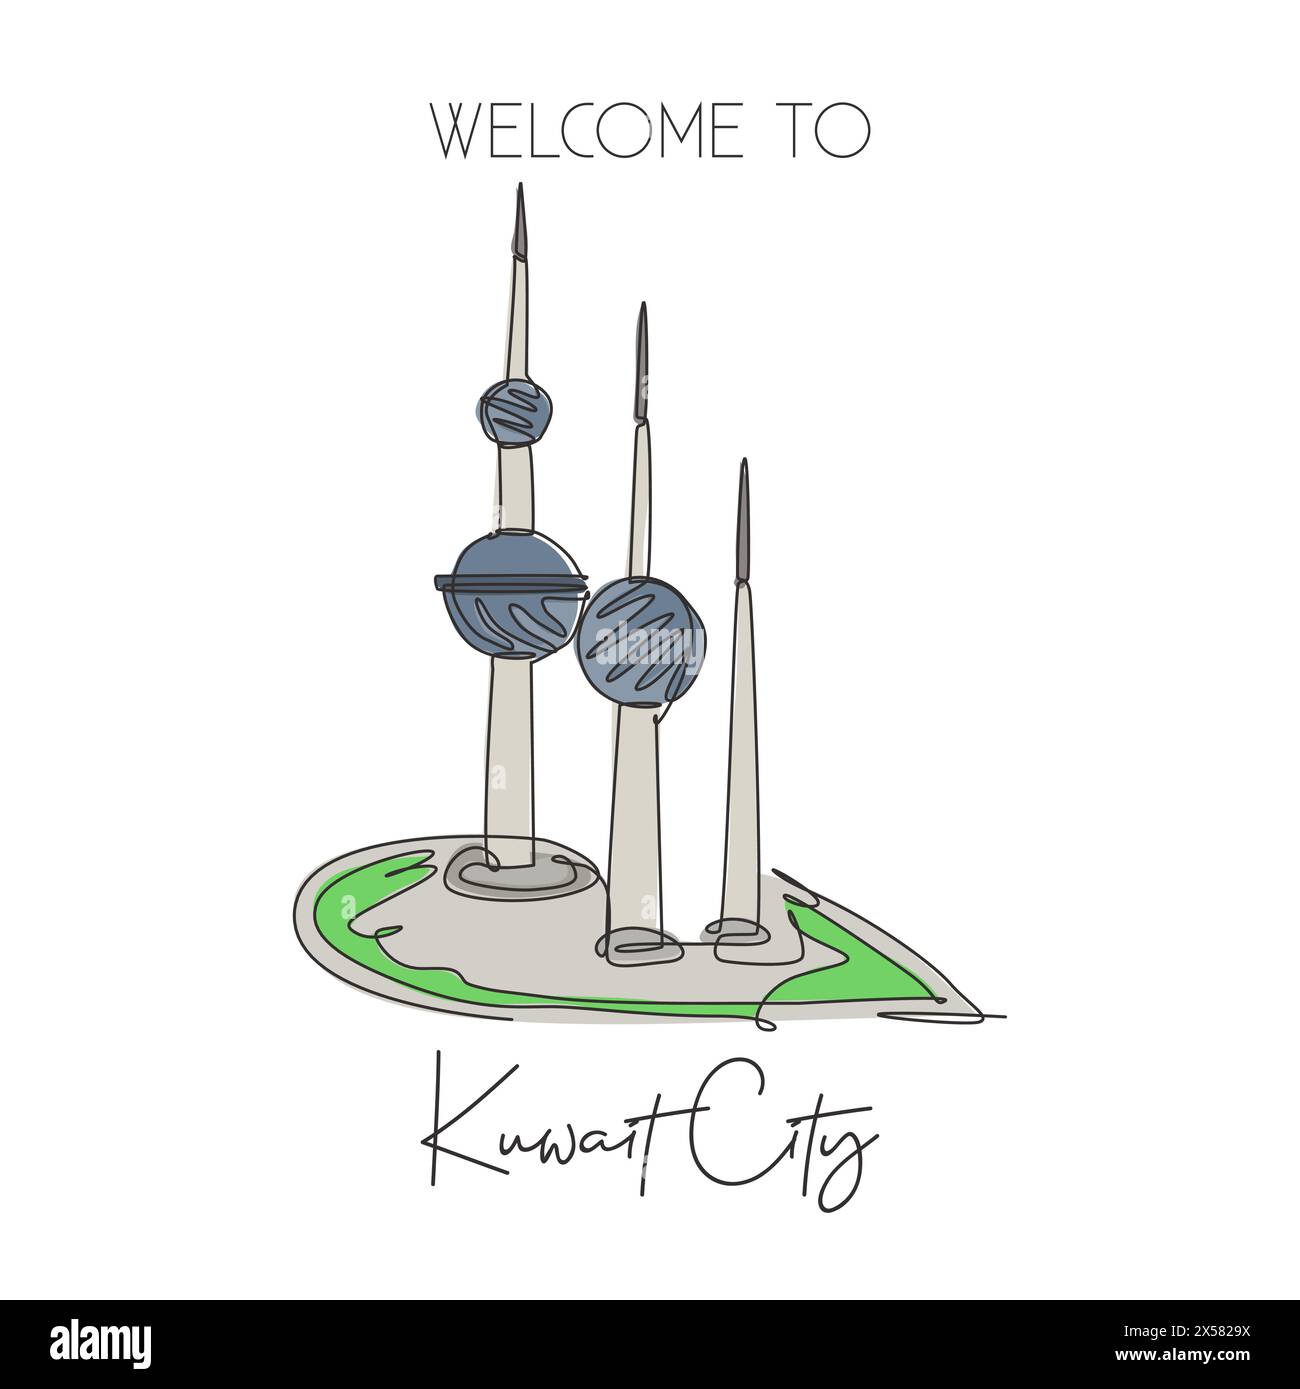 Eine einzelne Linie zeichnet das Wahrzeichen der Kuwait Towers. Weltberühmtes ikonisches Gebäude in Kuwait City. Tourismus Reise Postkarte Wanddekor Poster Konzept. Modern Stock Vektor